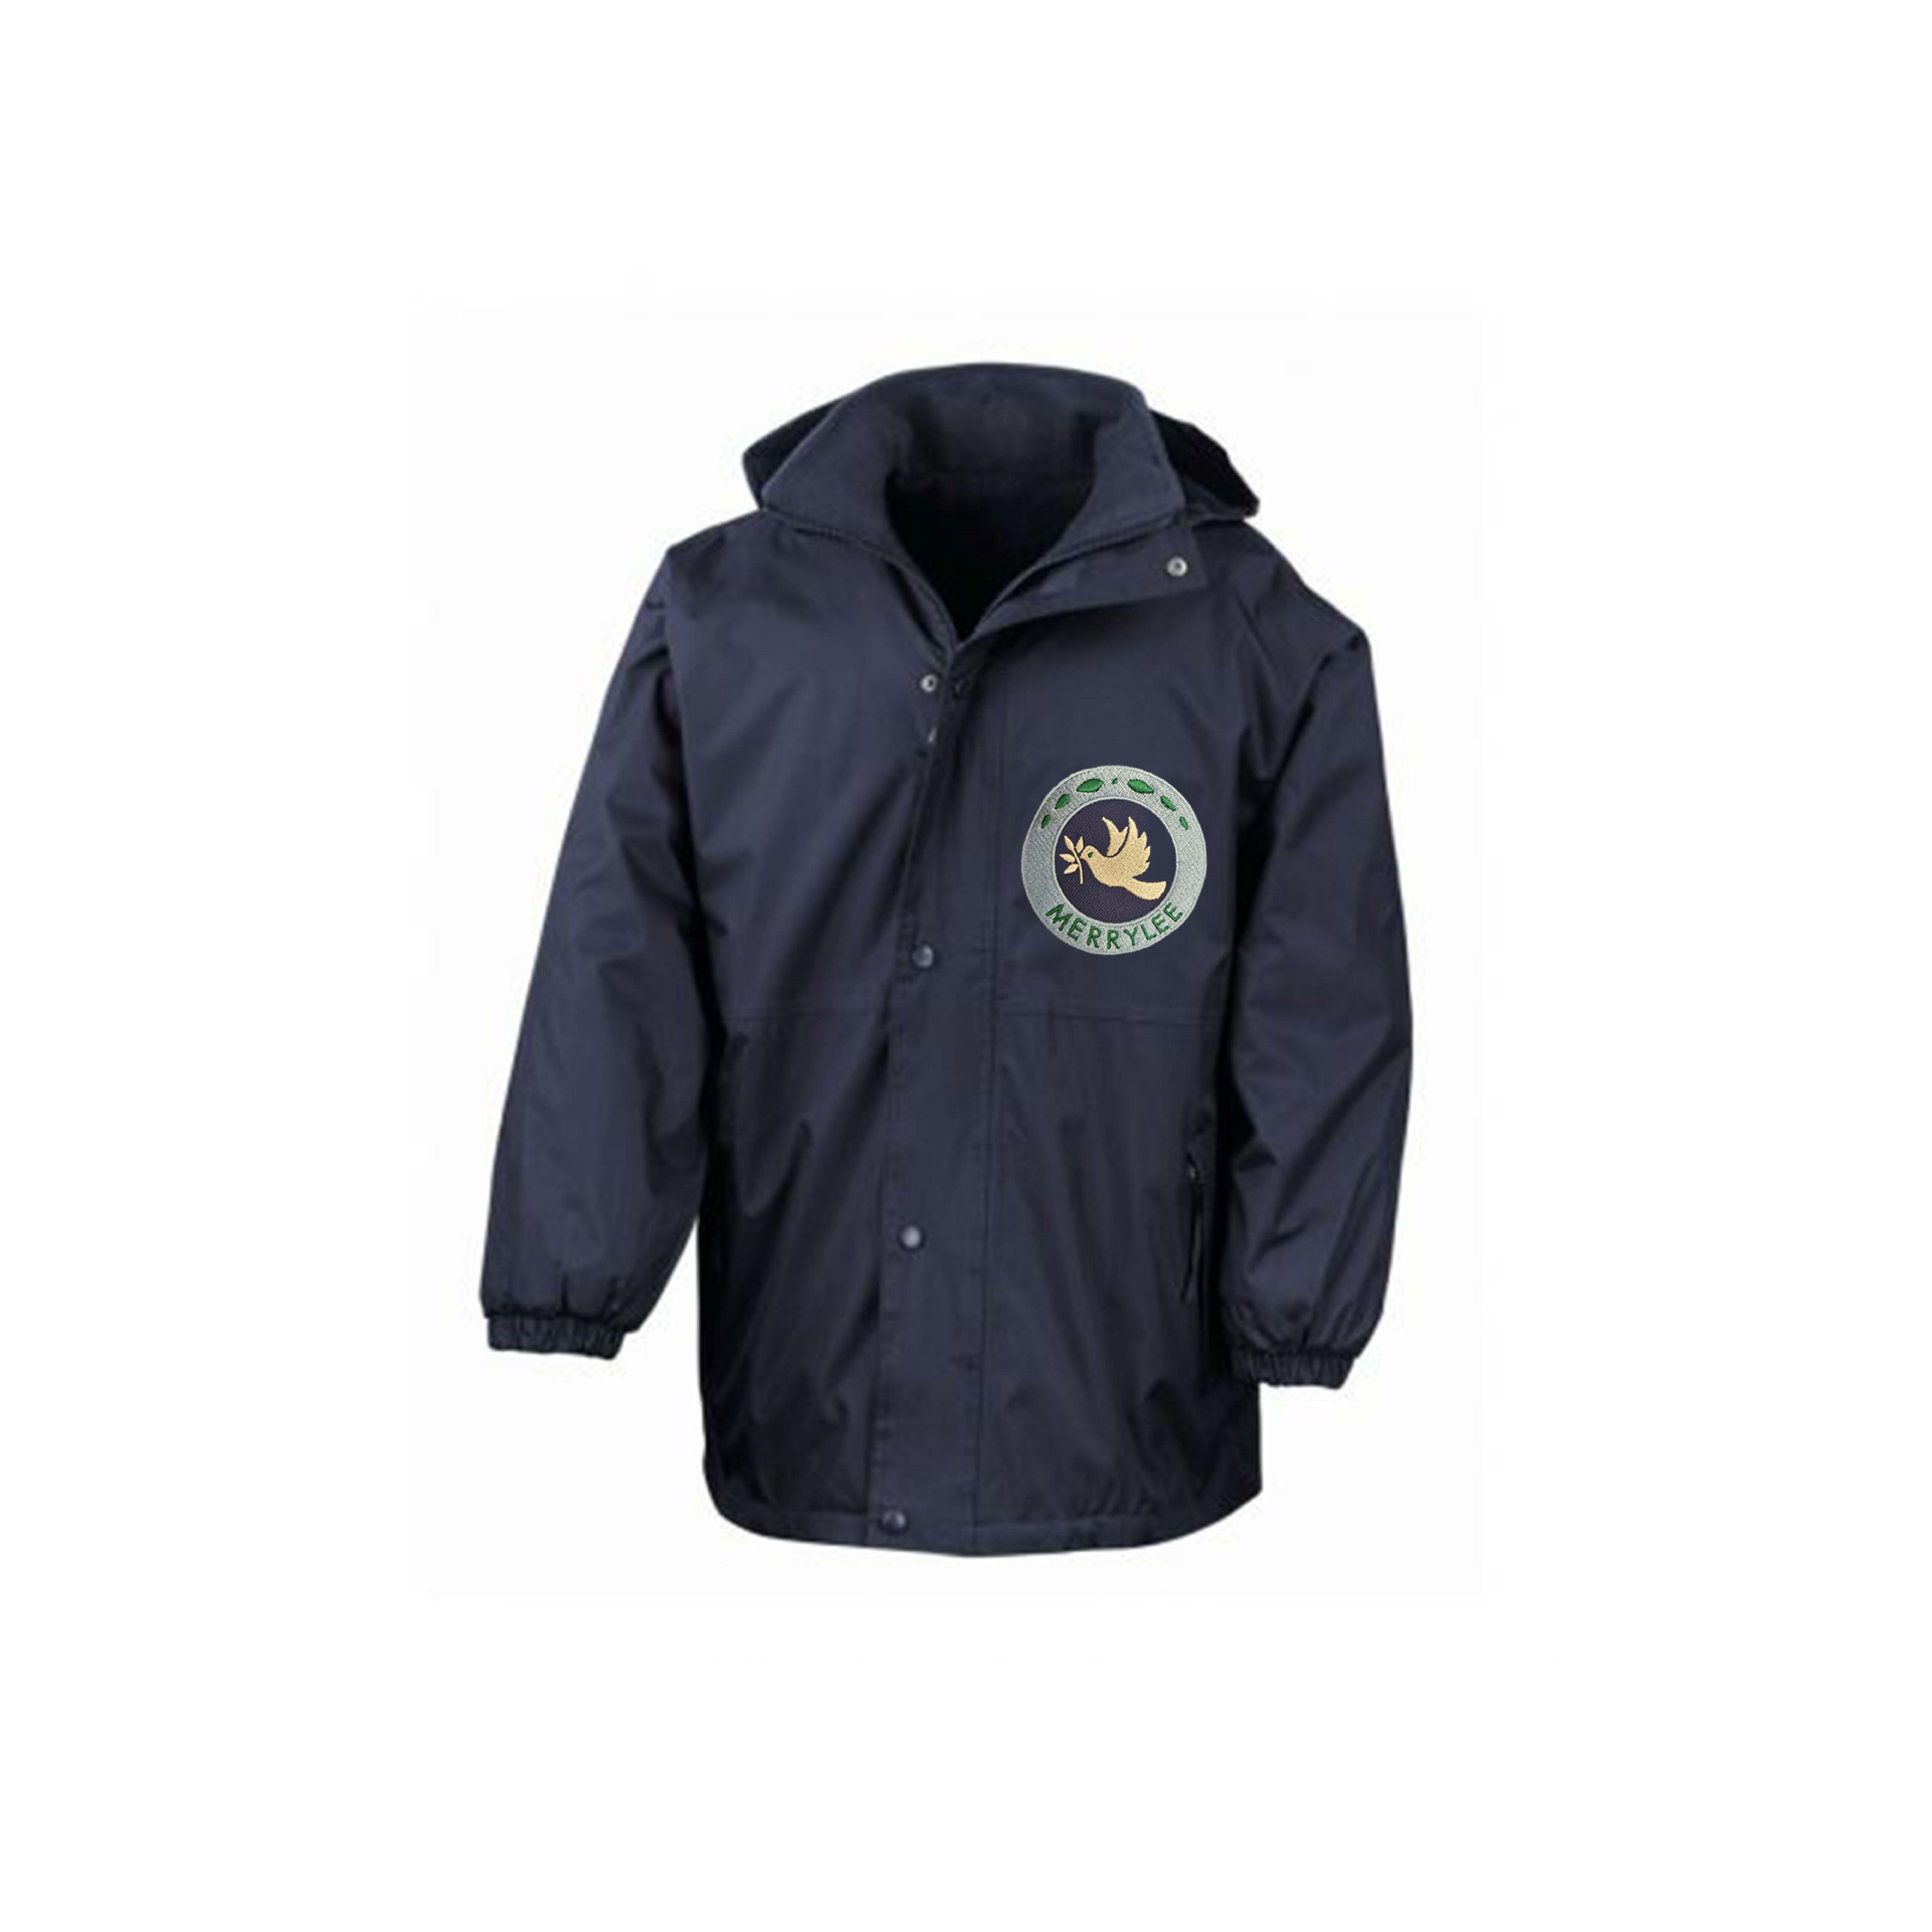 Merrylee Primary Heavy Duty Reversible Waterproof Jacket